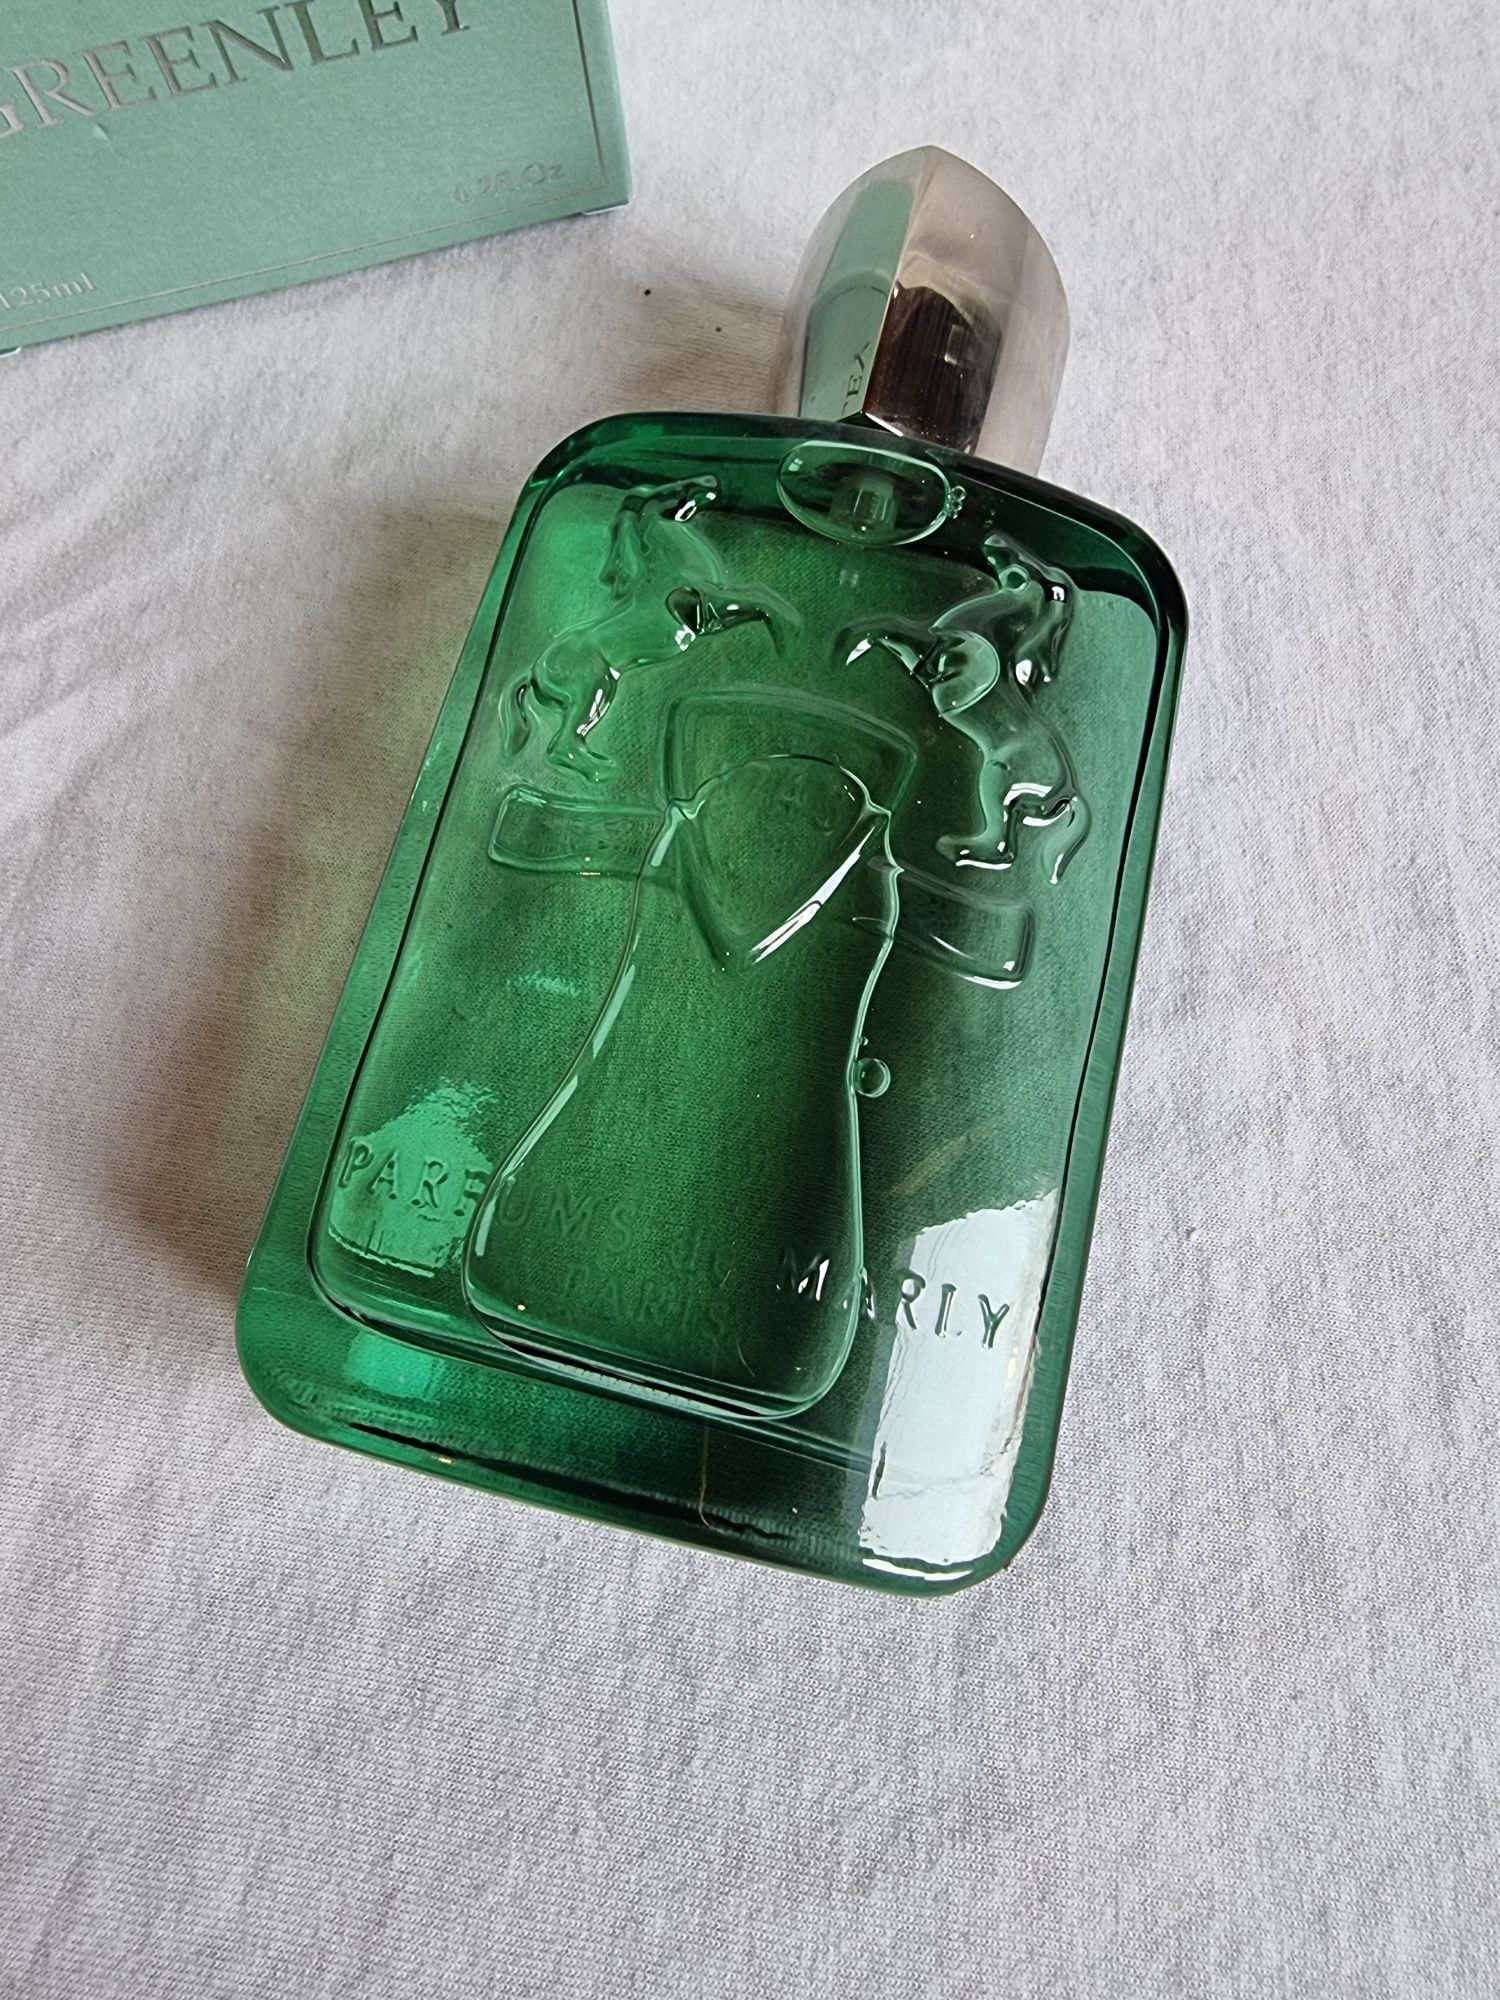 Parfums de Marly Greenley- парфюмированая вода 125мл, оригинал.